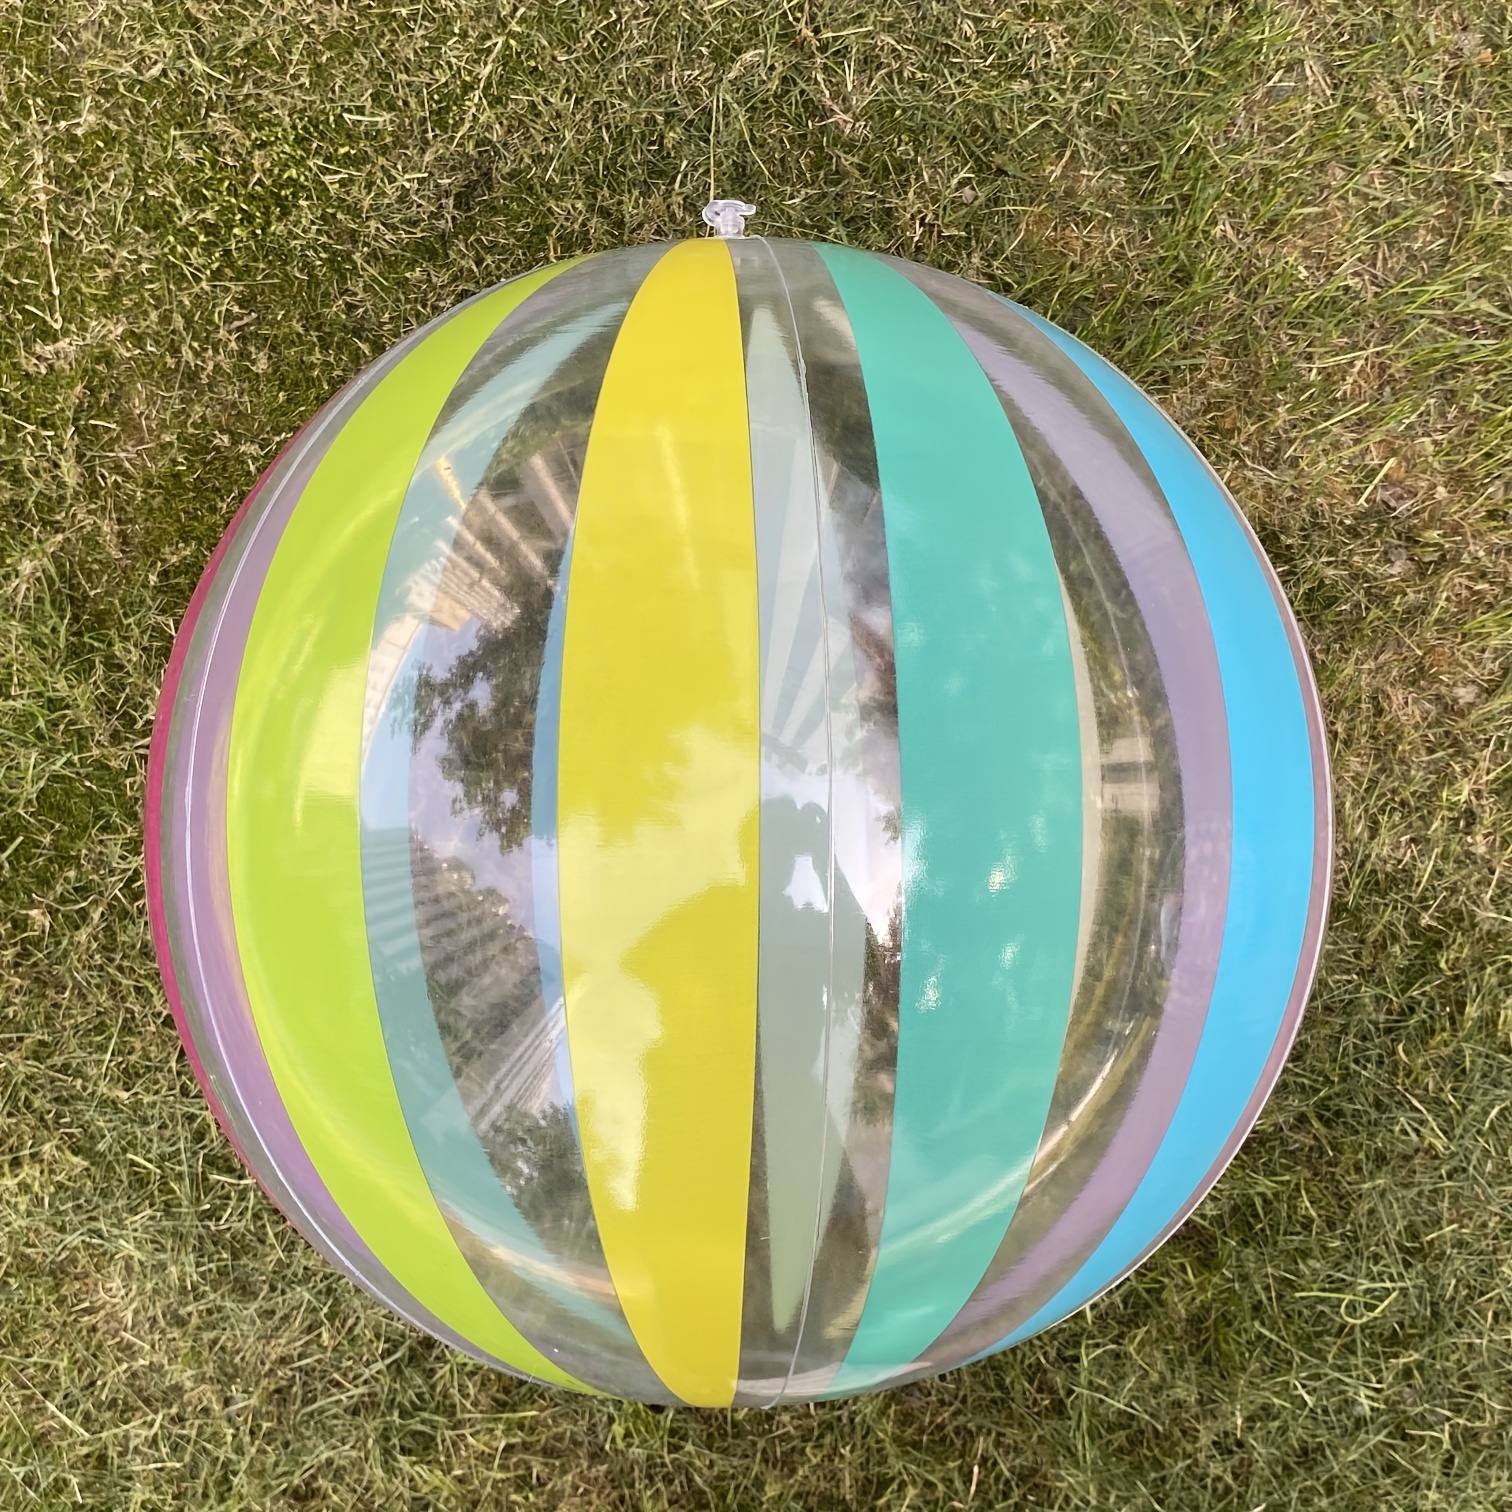 Grand Ballon de Plage Gonflable 1.4 mètres gonflé Hartjes Couleurs